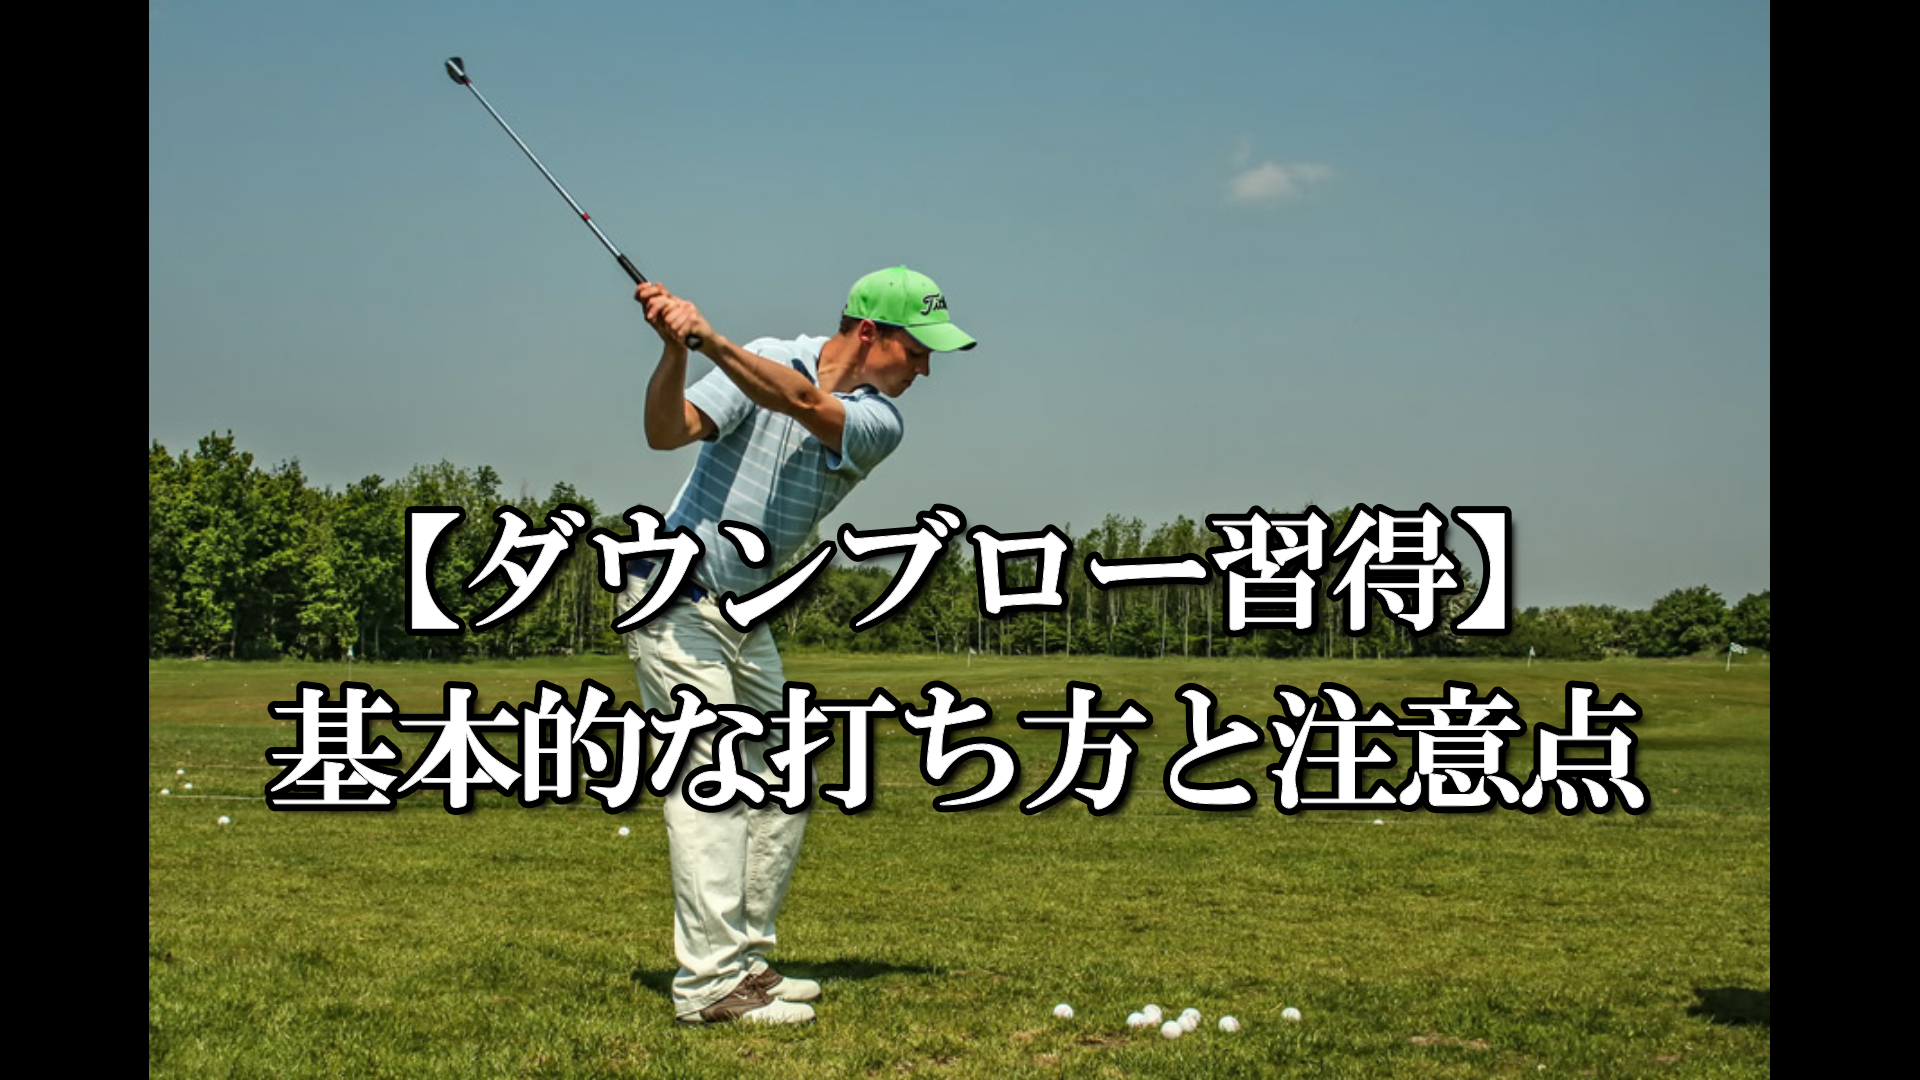 ダウンブロー習得 基本的な打ち方と注意点 ハイエストゴルフ Highest Golf